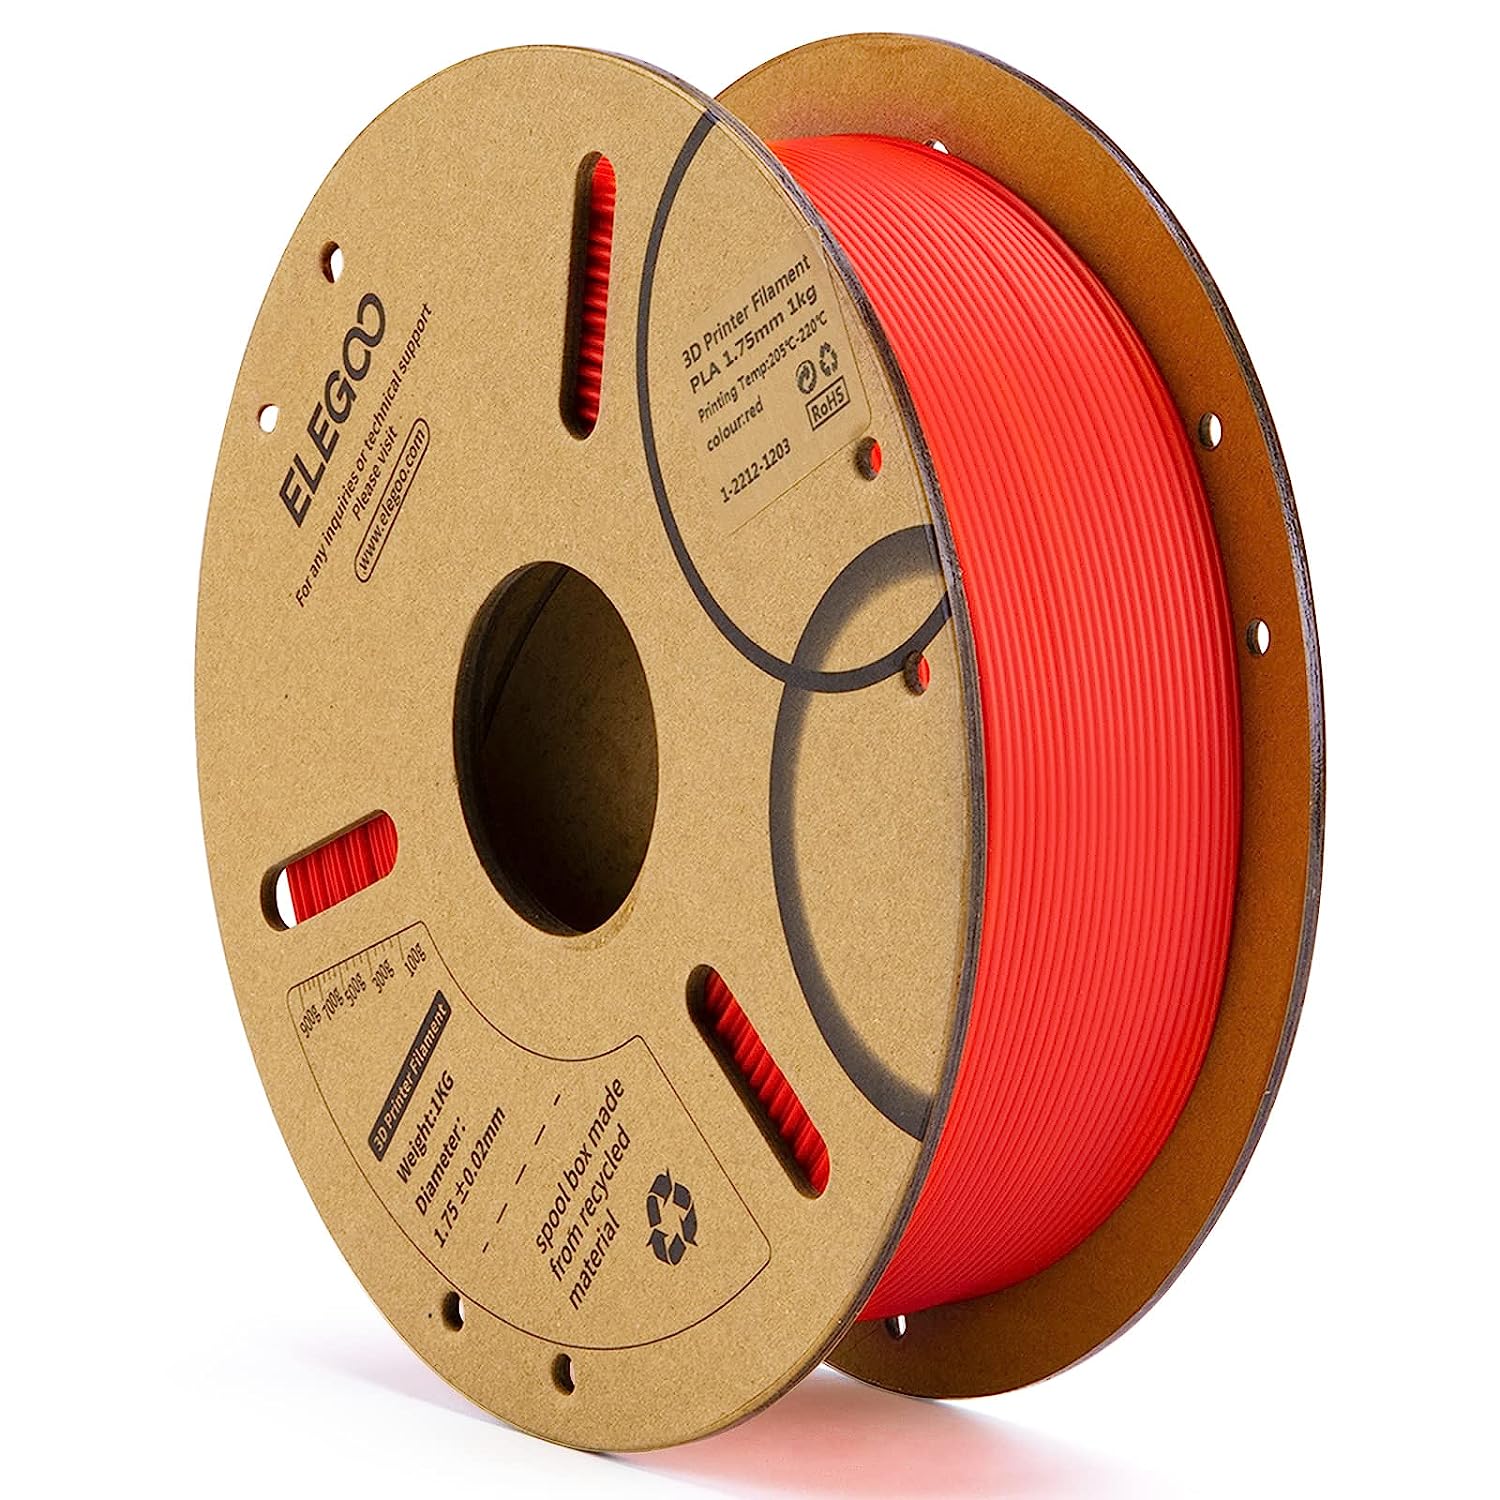 ELEGOO PLA Filament 1.75mm 3D Printer Filament 1Kg Cardboard Spool - Red